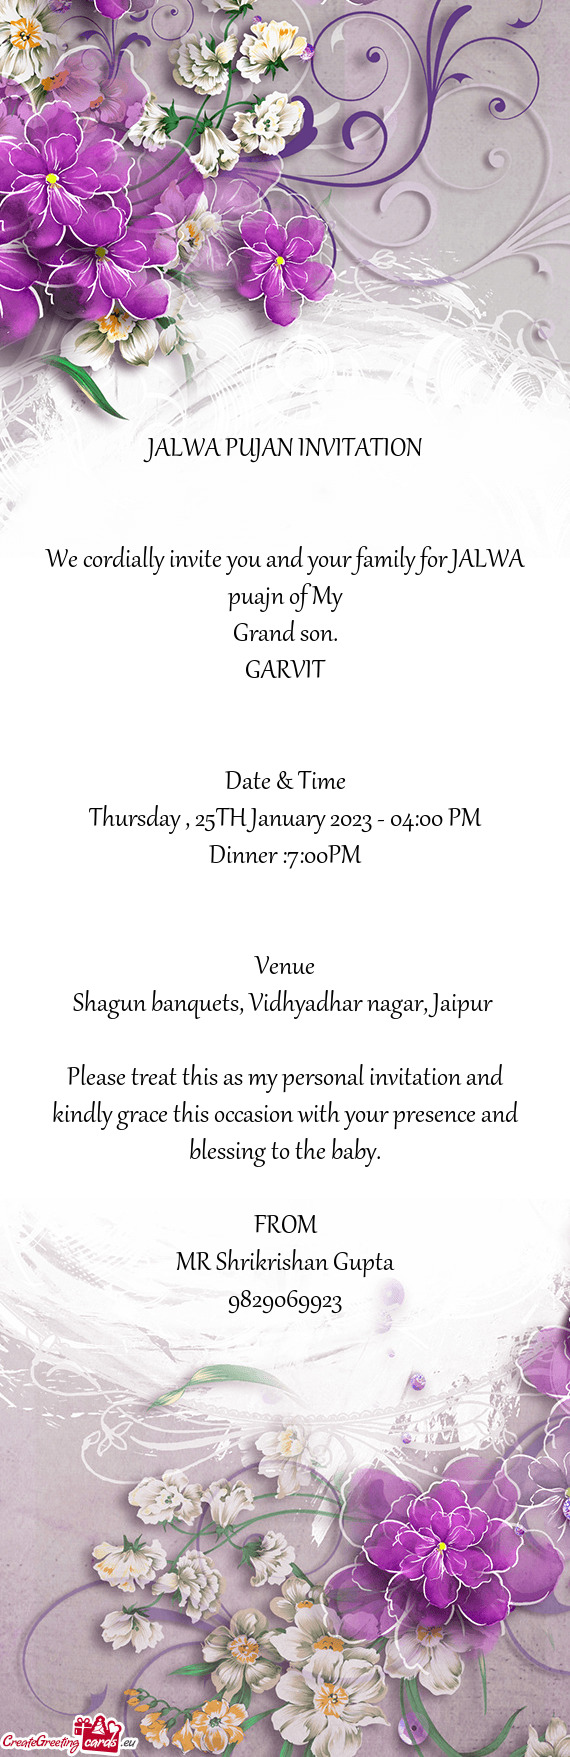 Shagun banquets, Vidhyadhar nagar, Jaipur